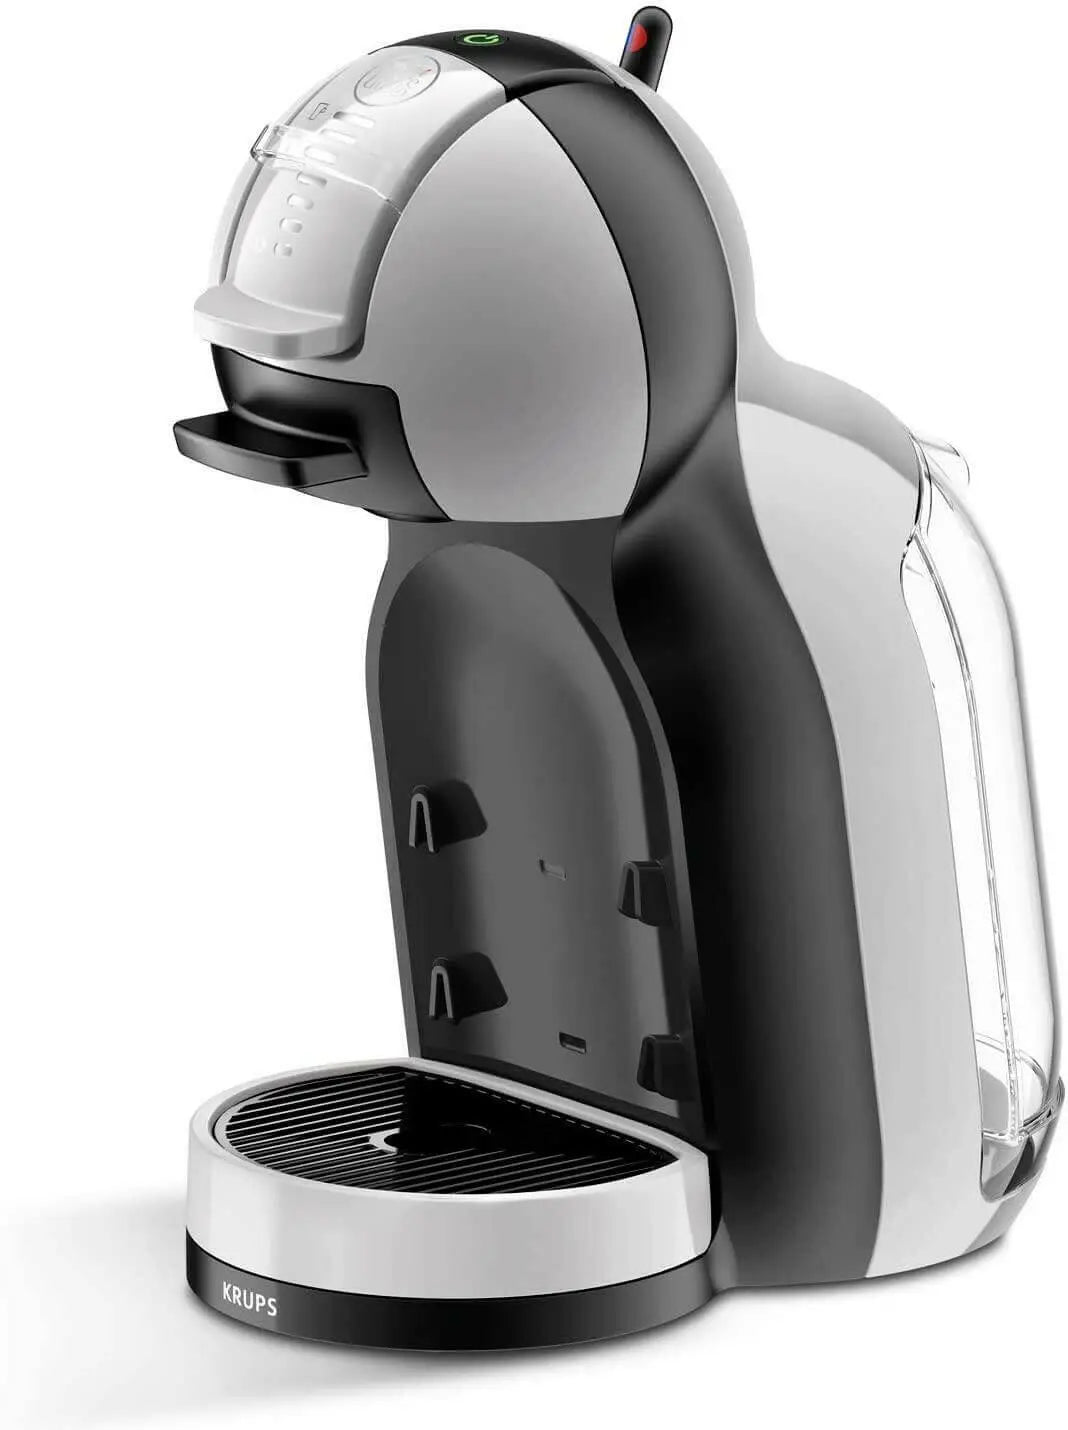 Delonghi Nescafe Dolce Gusto Mini Me Automatic Coffee Machine Black/Grey